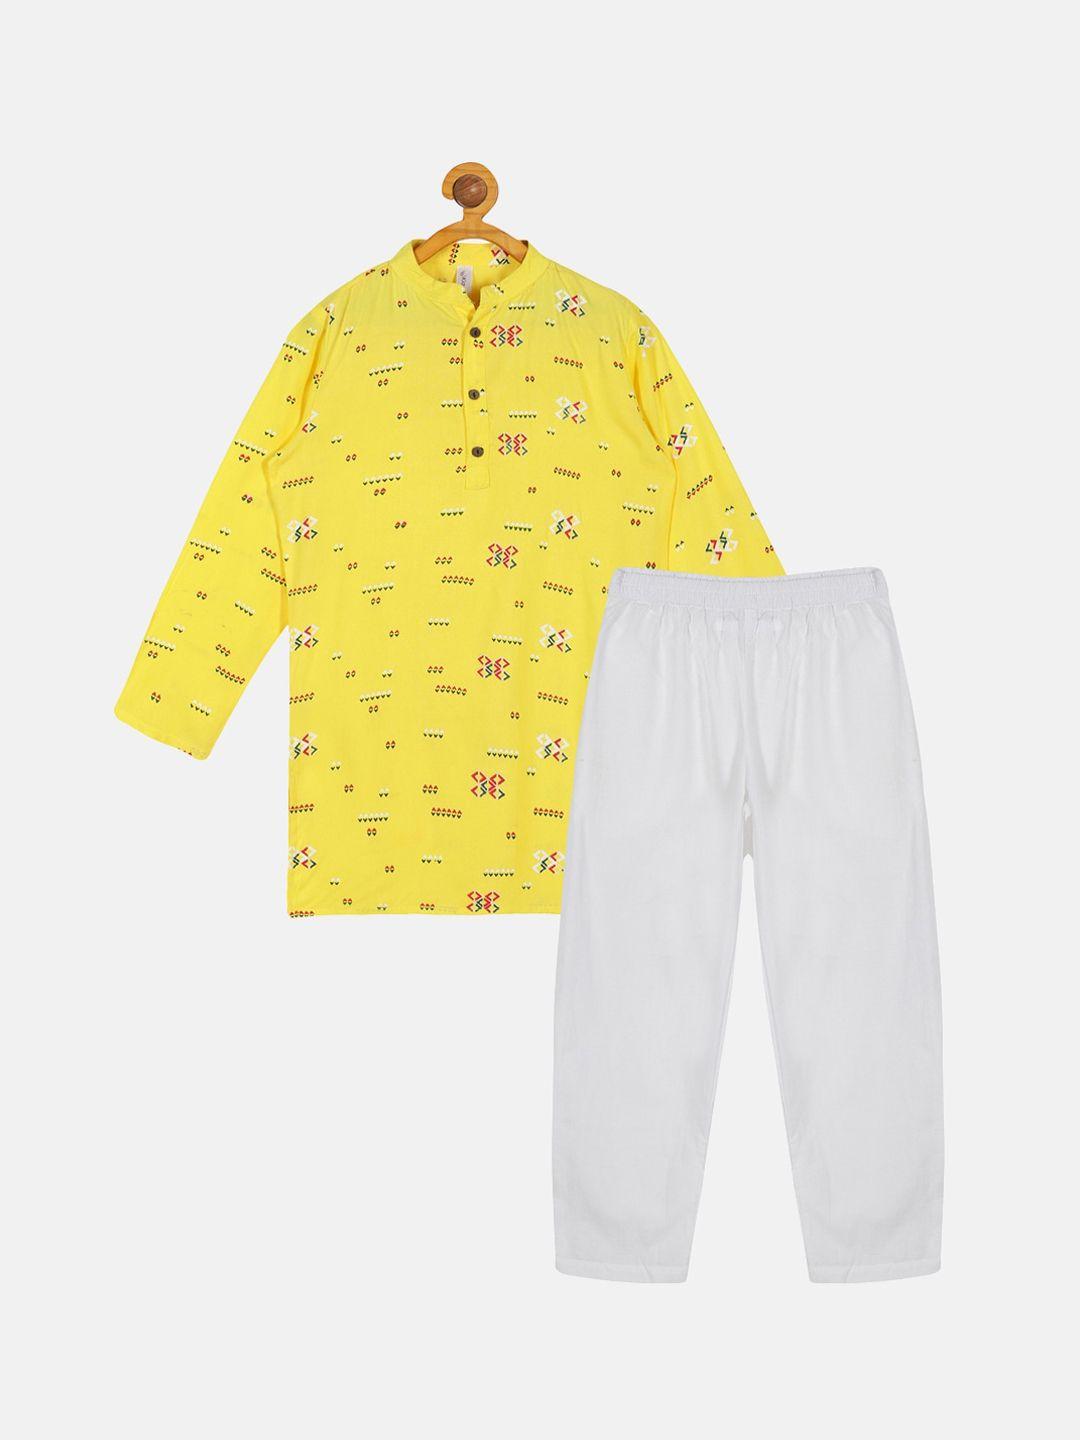 kiddopanti boys printed kurta with pyjamas